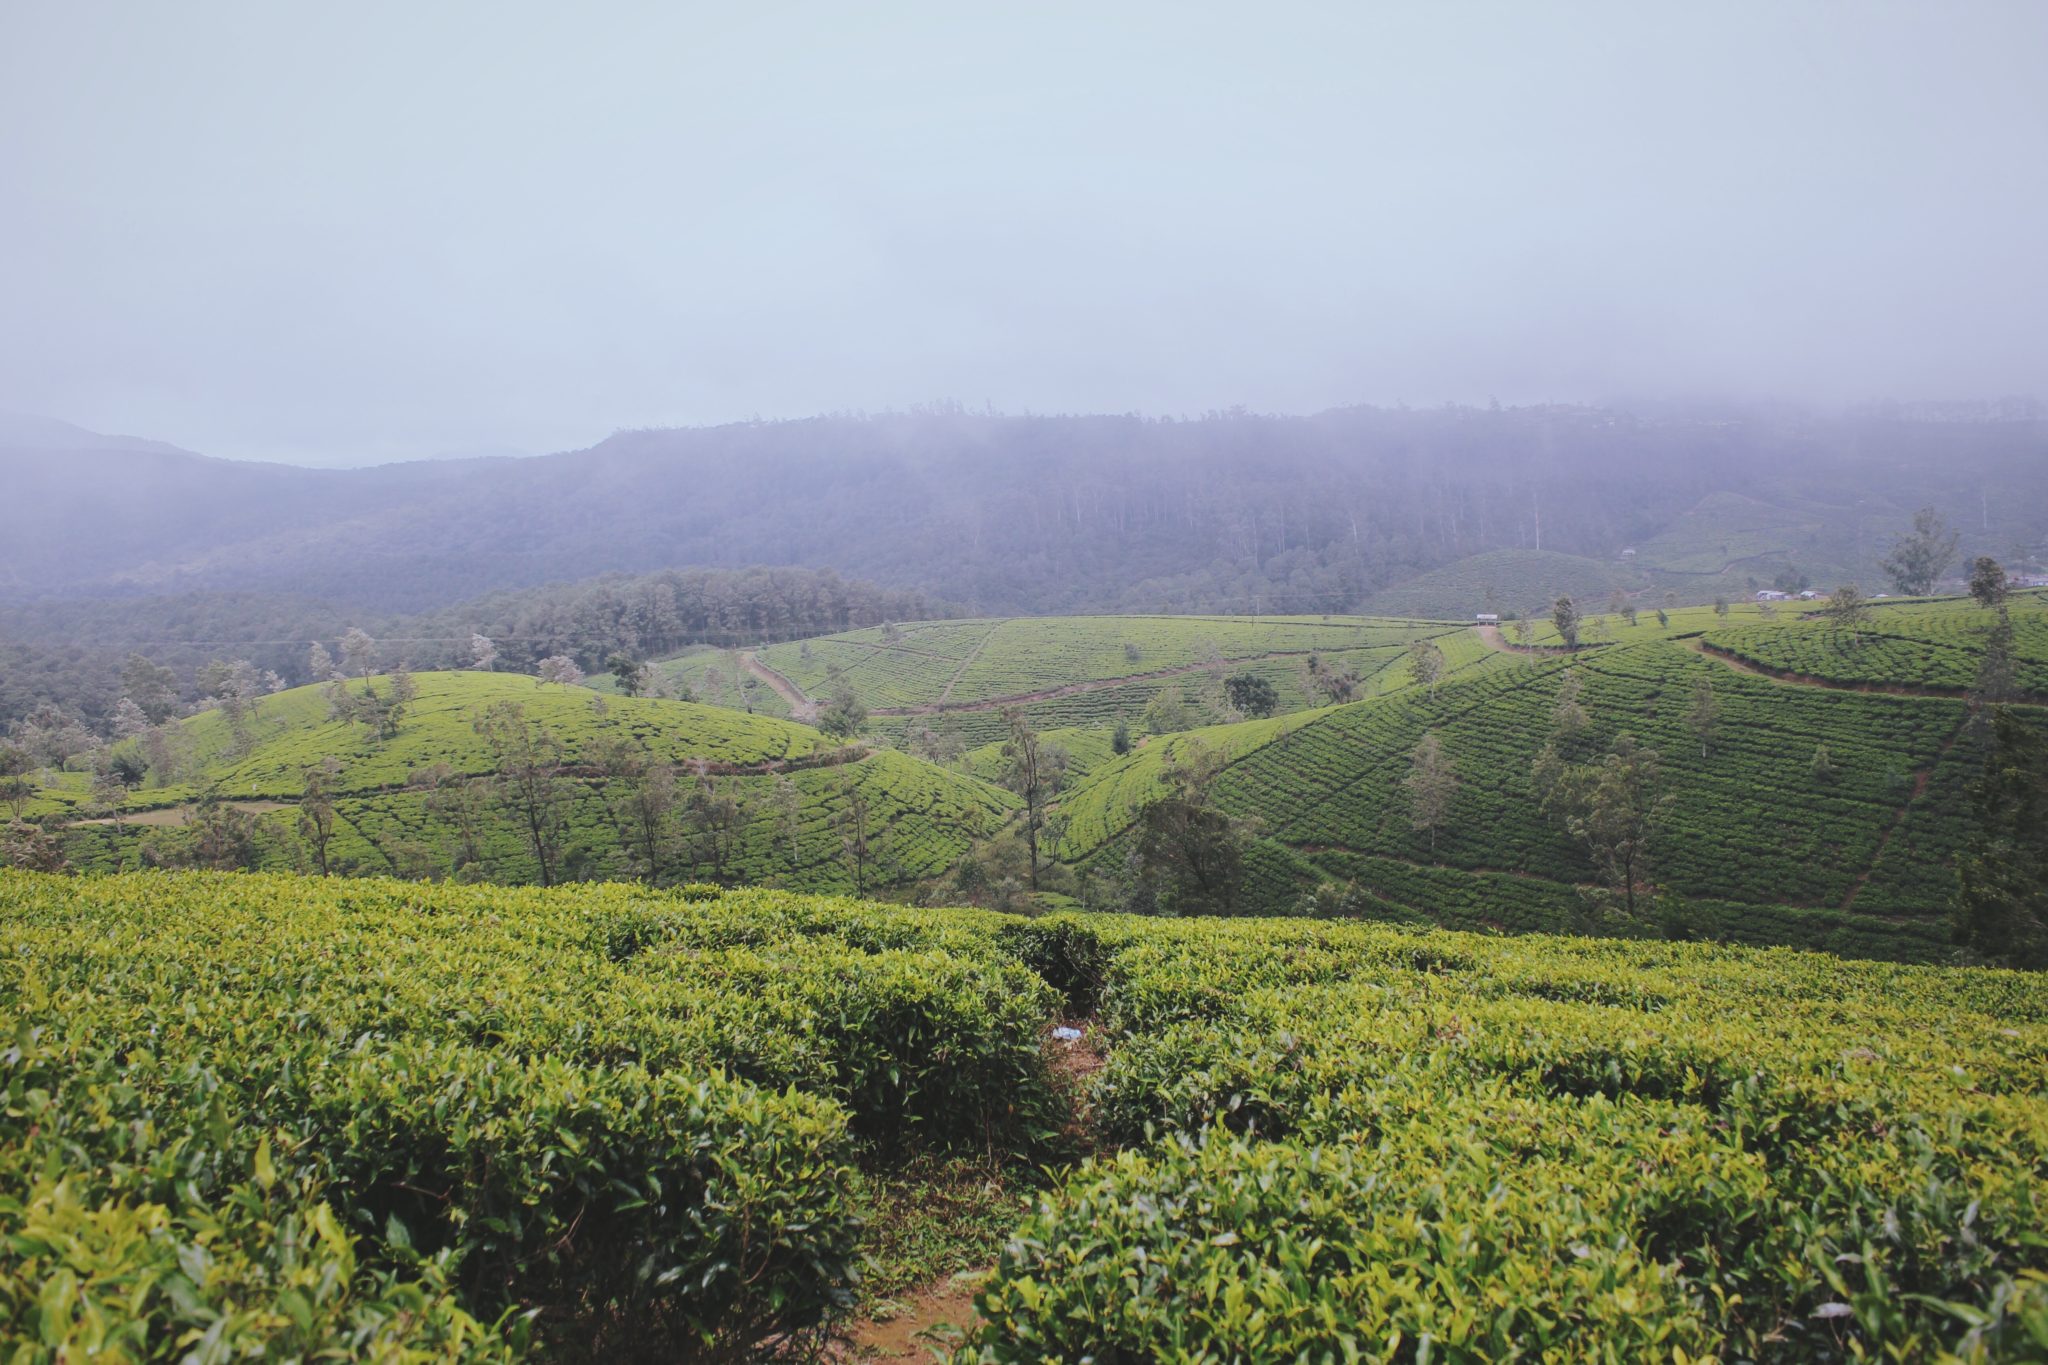 Sri Lanka, Nuwara Eliya, pola herbaciane, herbata, pole, pole herbaty, zielone krzaki, rośliny, zieleń, pole uprawne